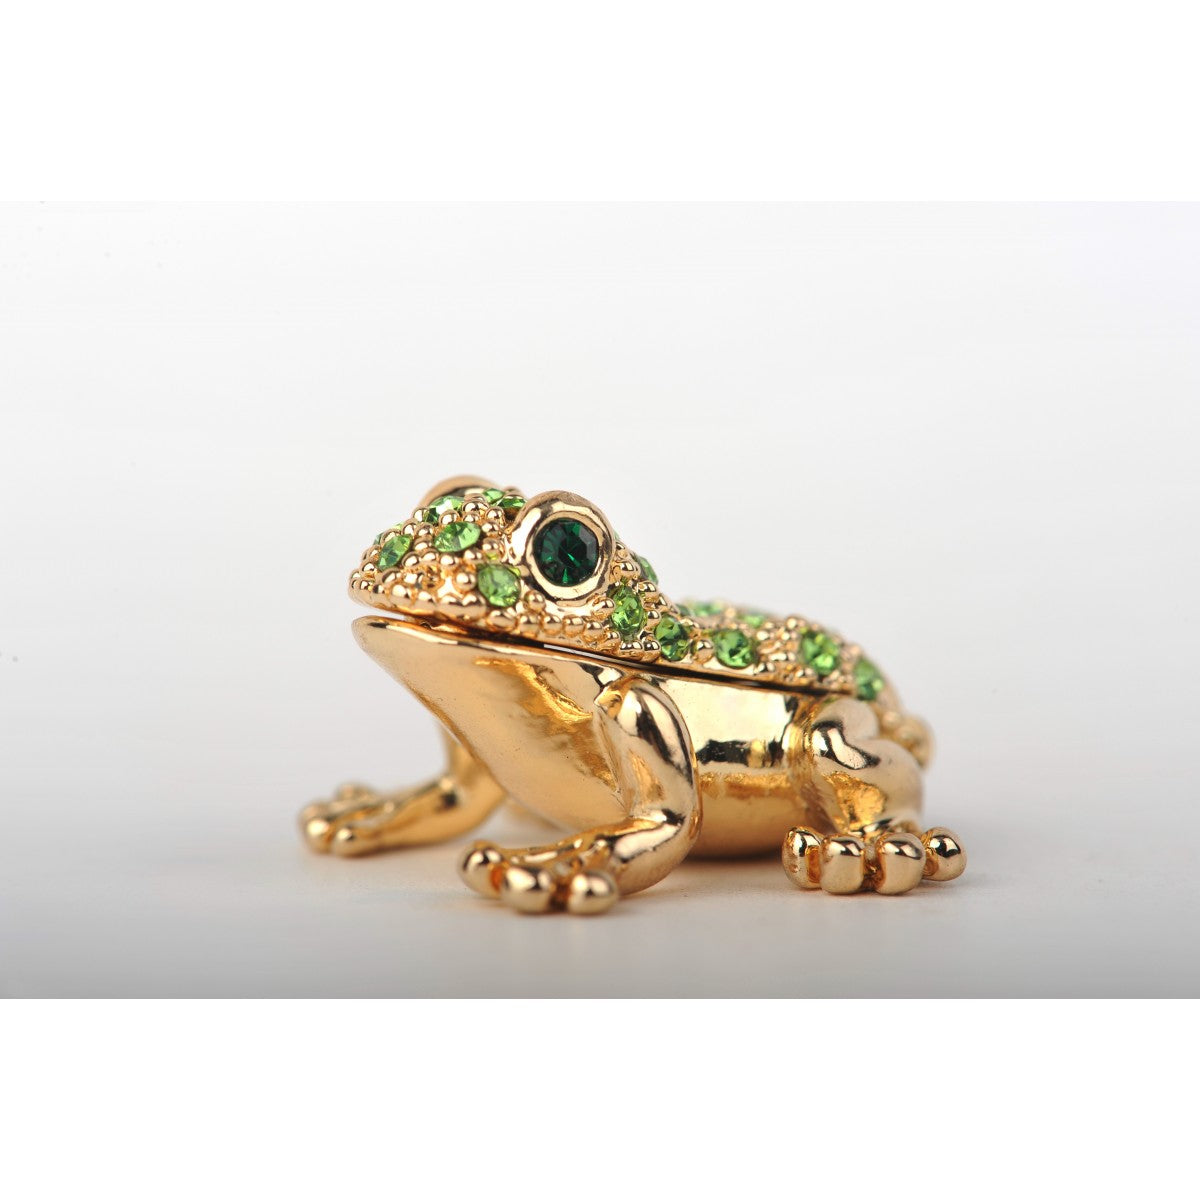 Gold and green frog by Keren Kopal